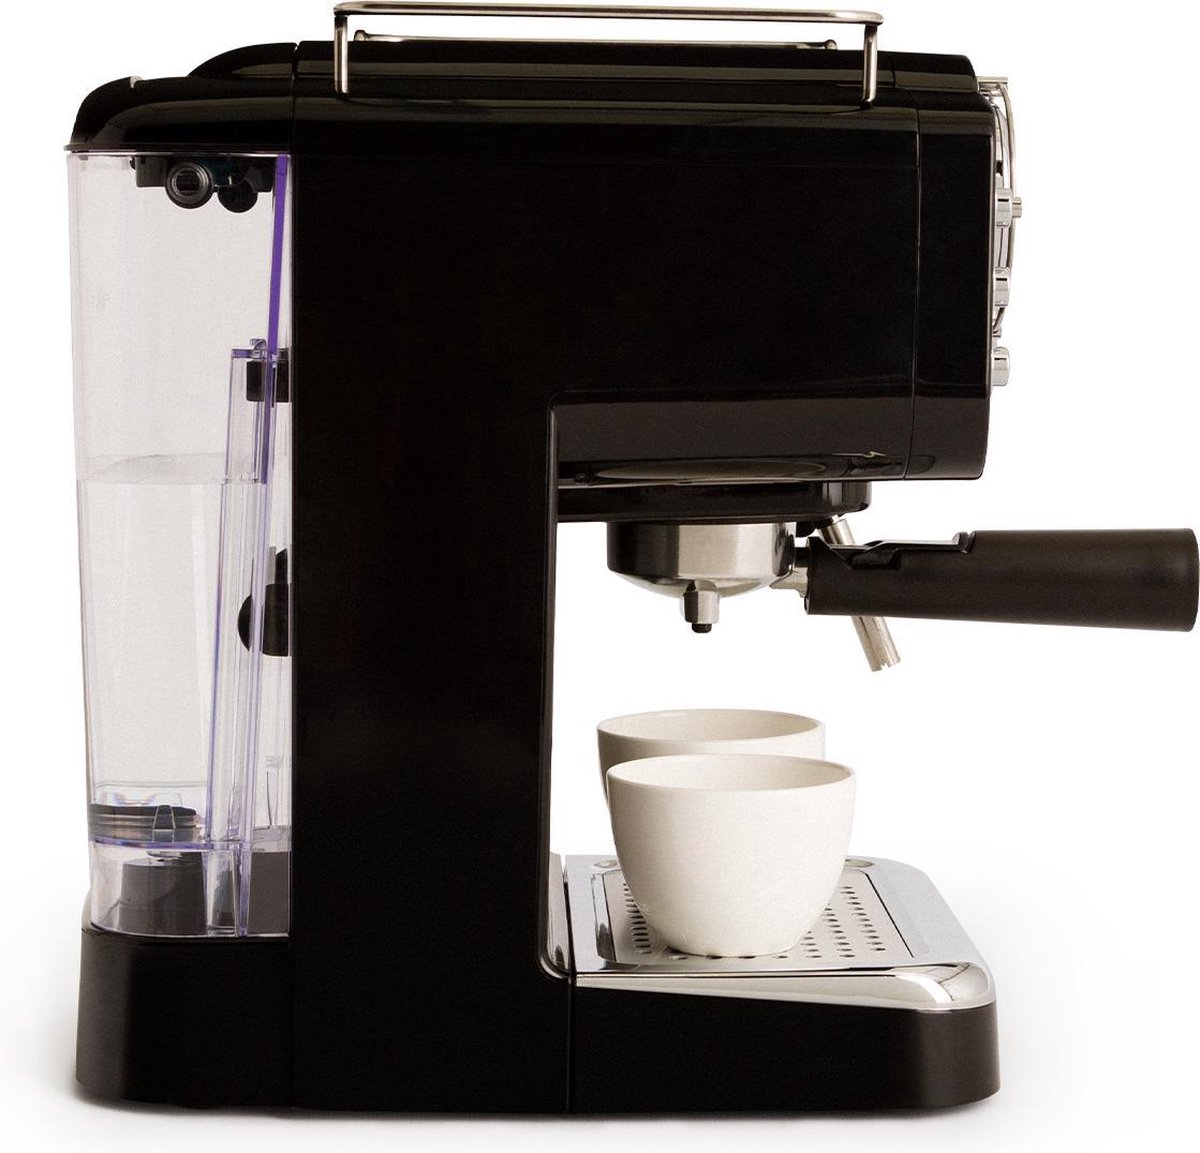 Machine à café au bureau : quel modèle choisir ? - Brâam